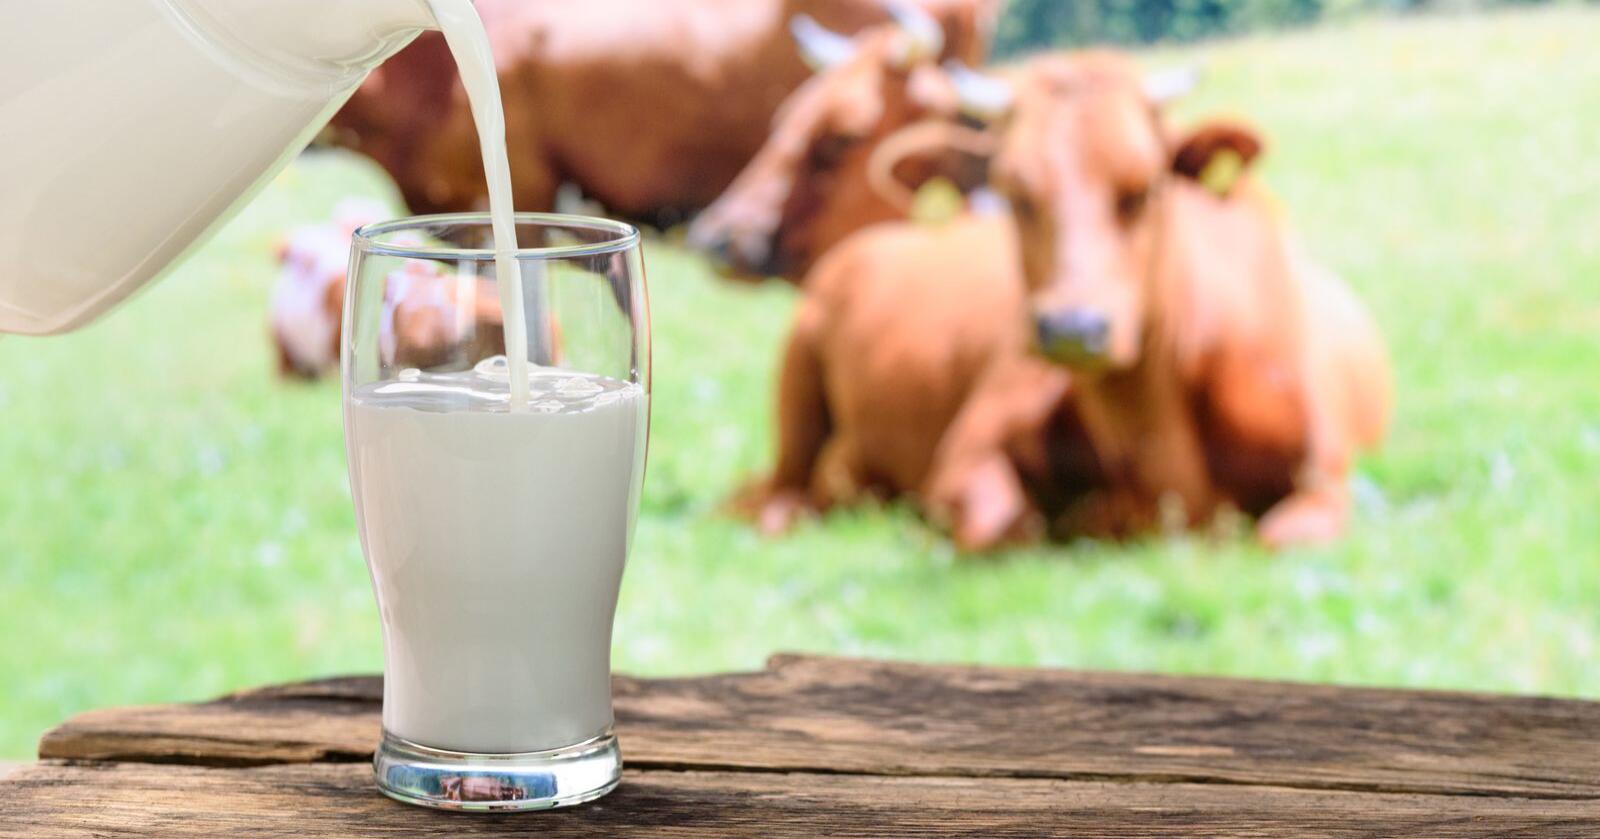 Må ikke ha: Melk og meieriprodukter utgjør cirka 22 prosent av proteininntaket. Disse tallene viser at vi ikke er avhengig av melk for å dekke proteinbehovet, skriver innsenderne. Foto: Mostphotos